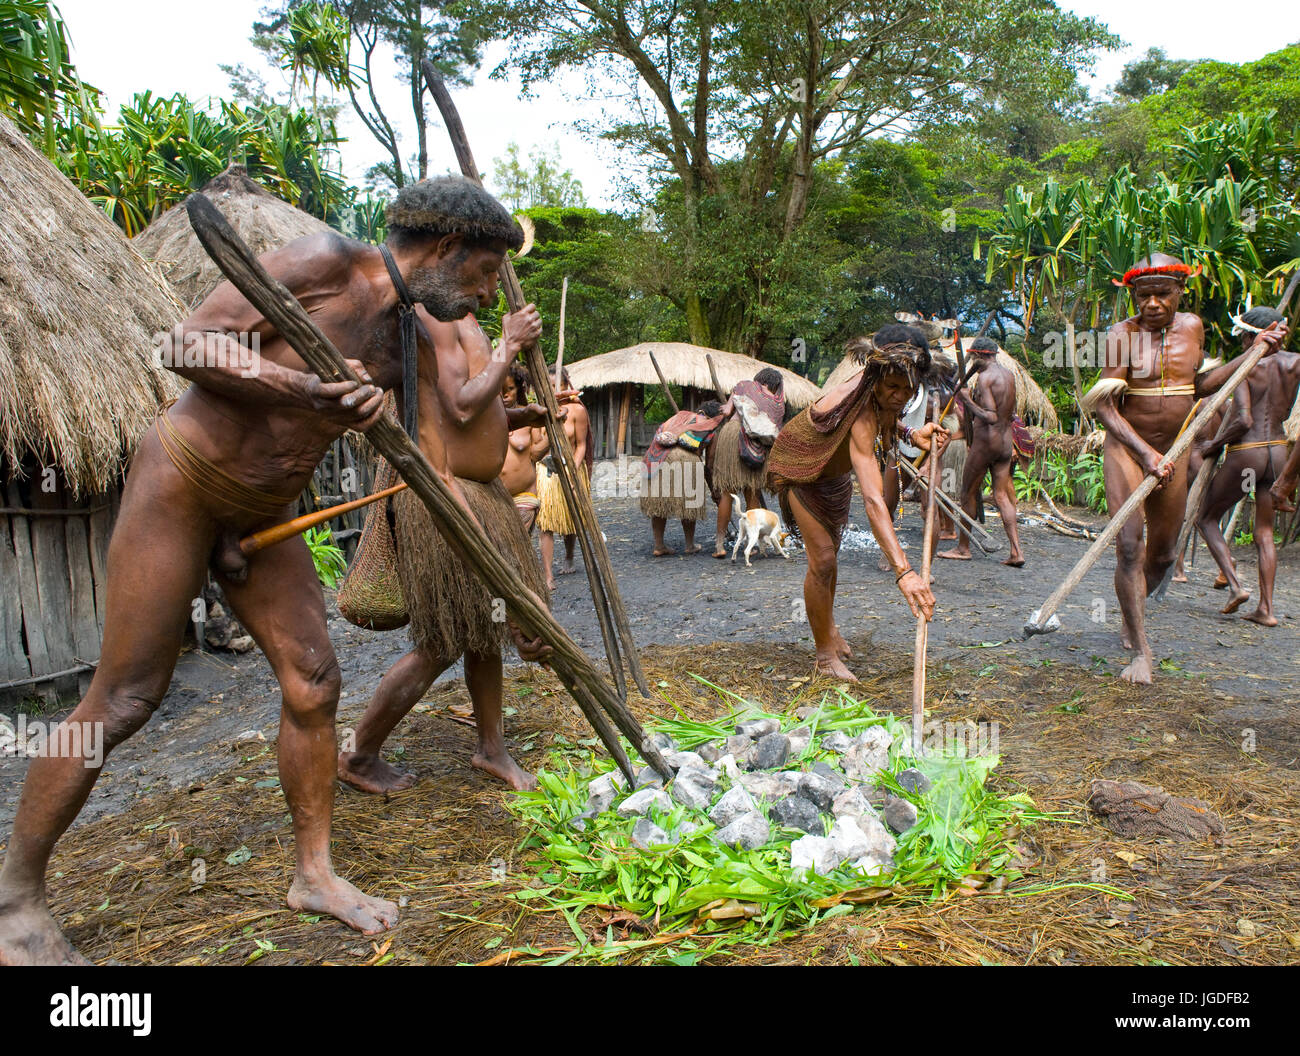 DANI-Dorf, WAMENA, IRIAN JAYA, Neuguinea, Indonesien – 25. Juli 2009: Männer Dani Stamm im Dorf sind die hot Stones für das Kochen von Fleisch. Stockfoto